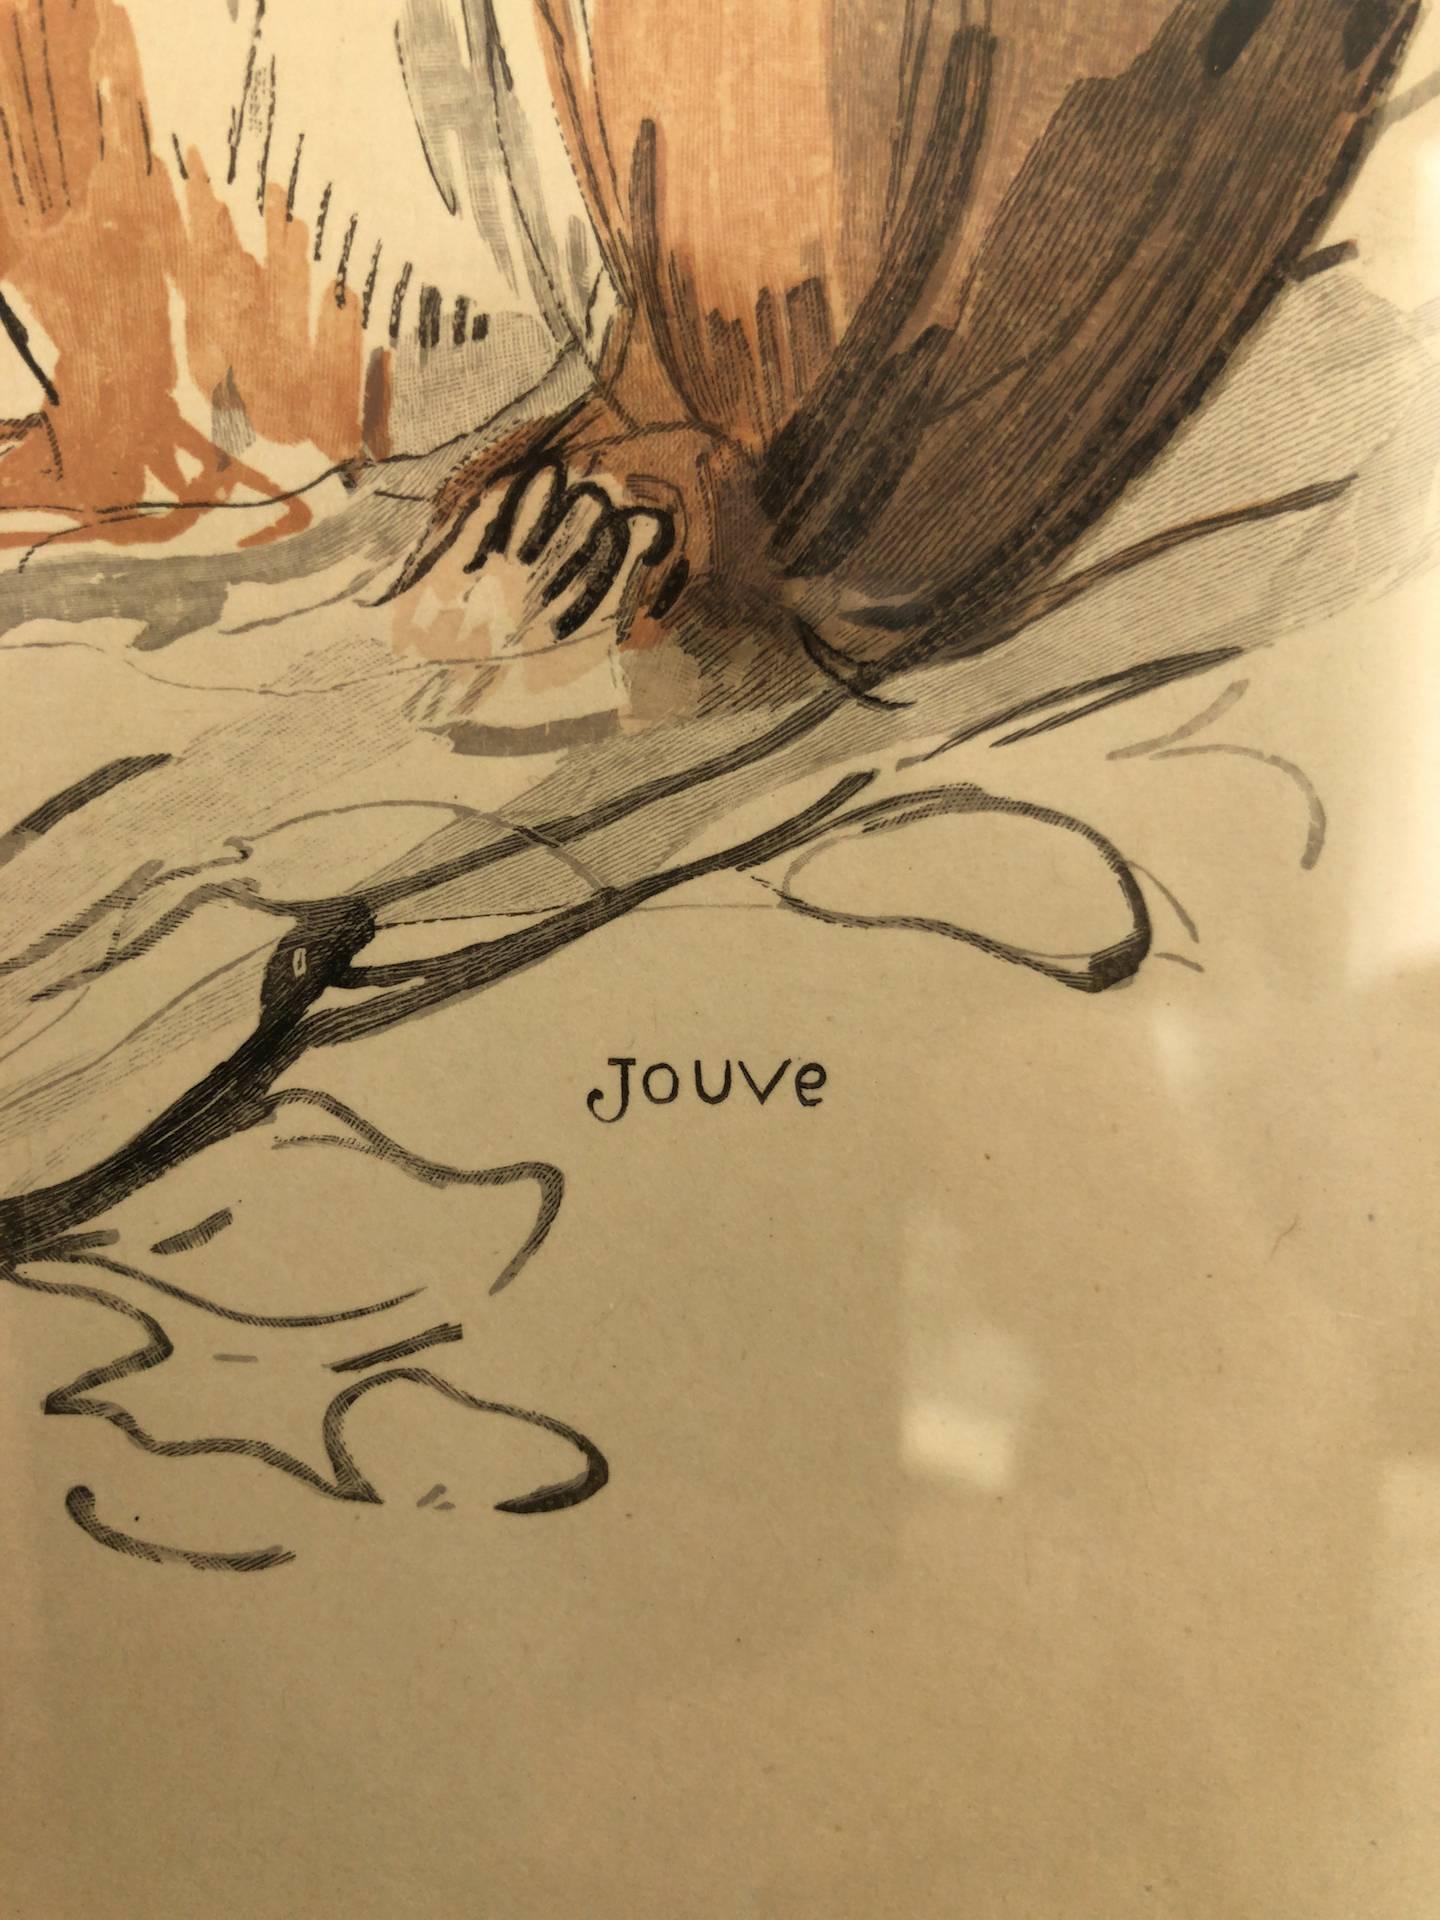 L’écureuil, Squirrel, Lithograph by Paul Jouve, France 1932 (Französisch)